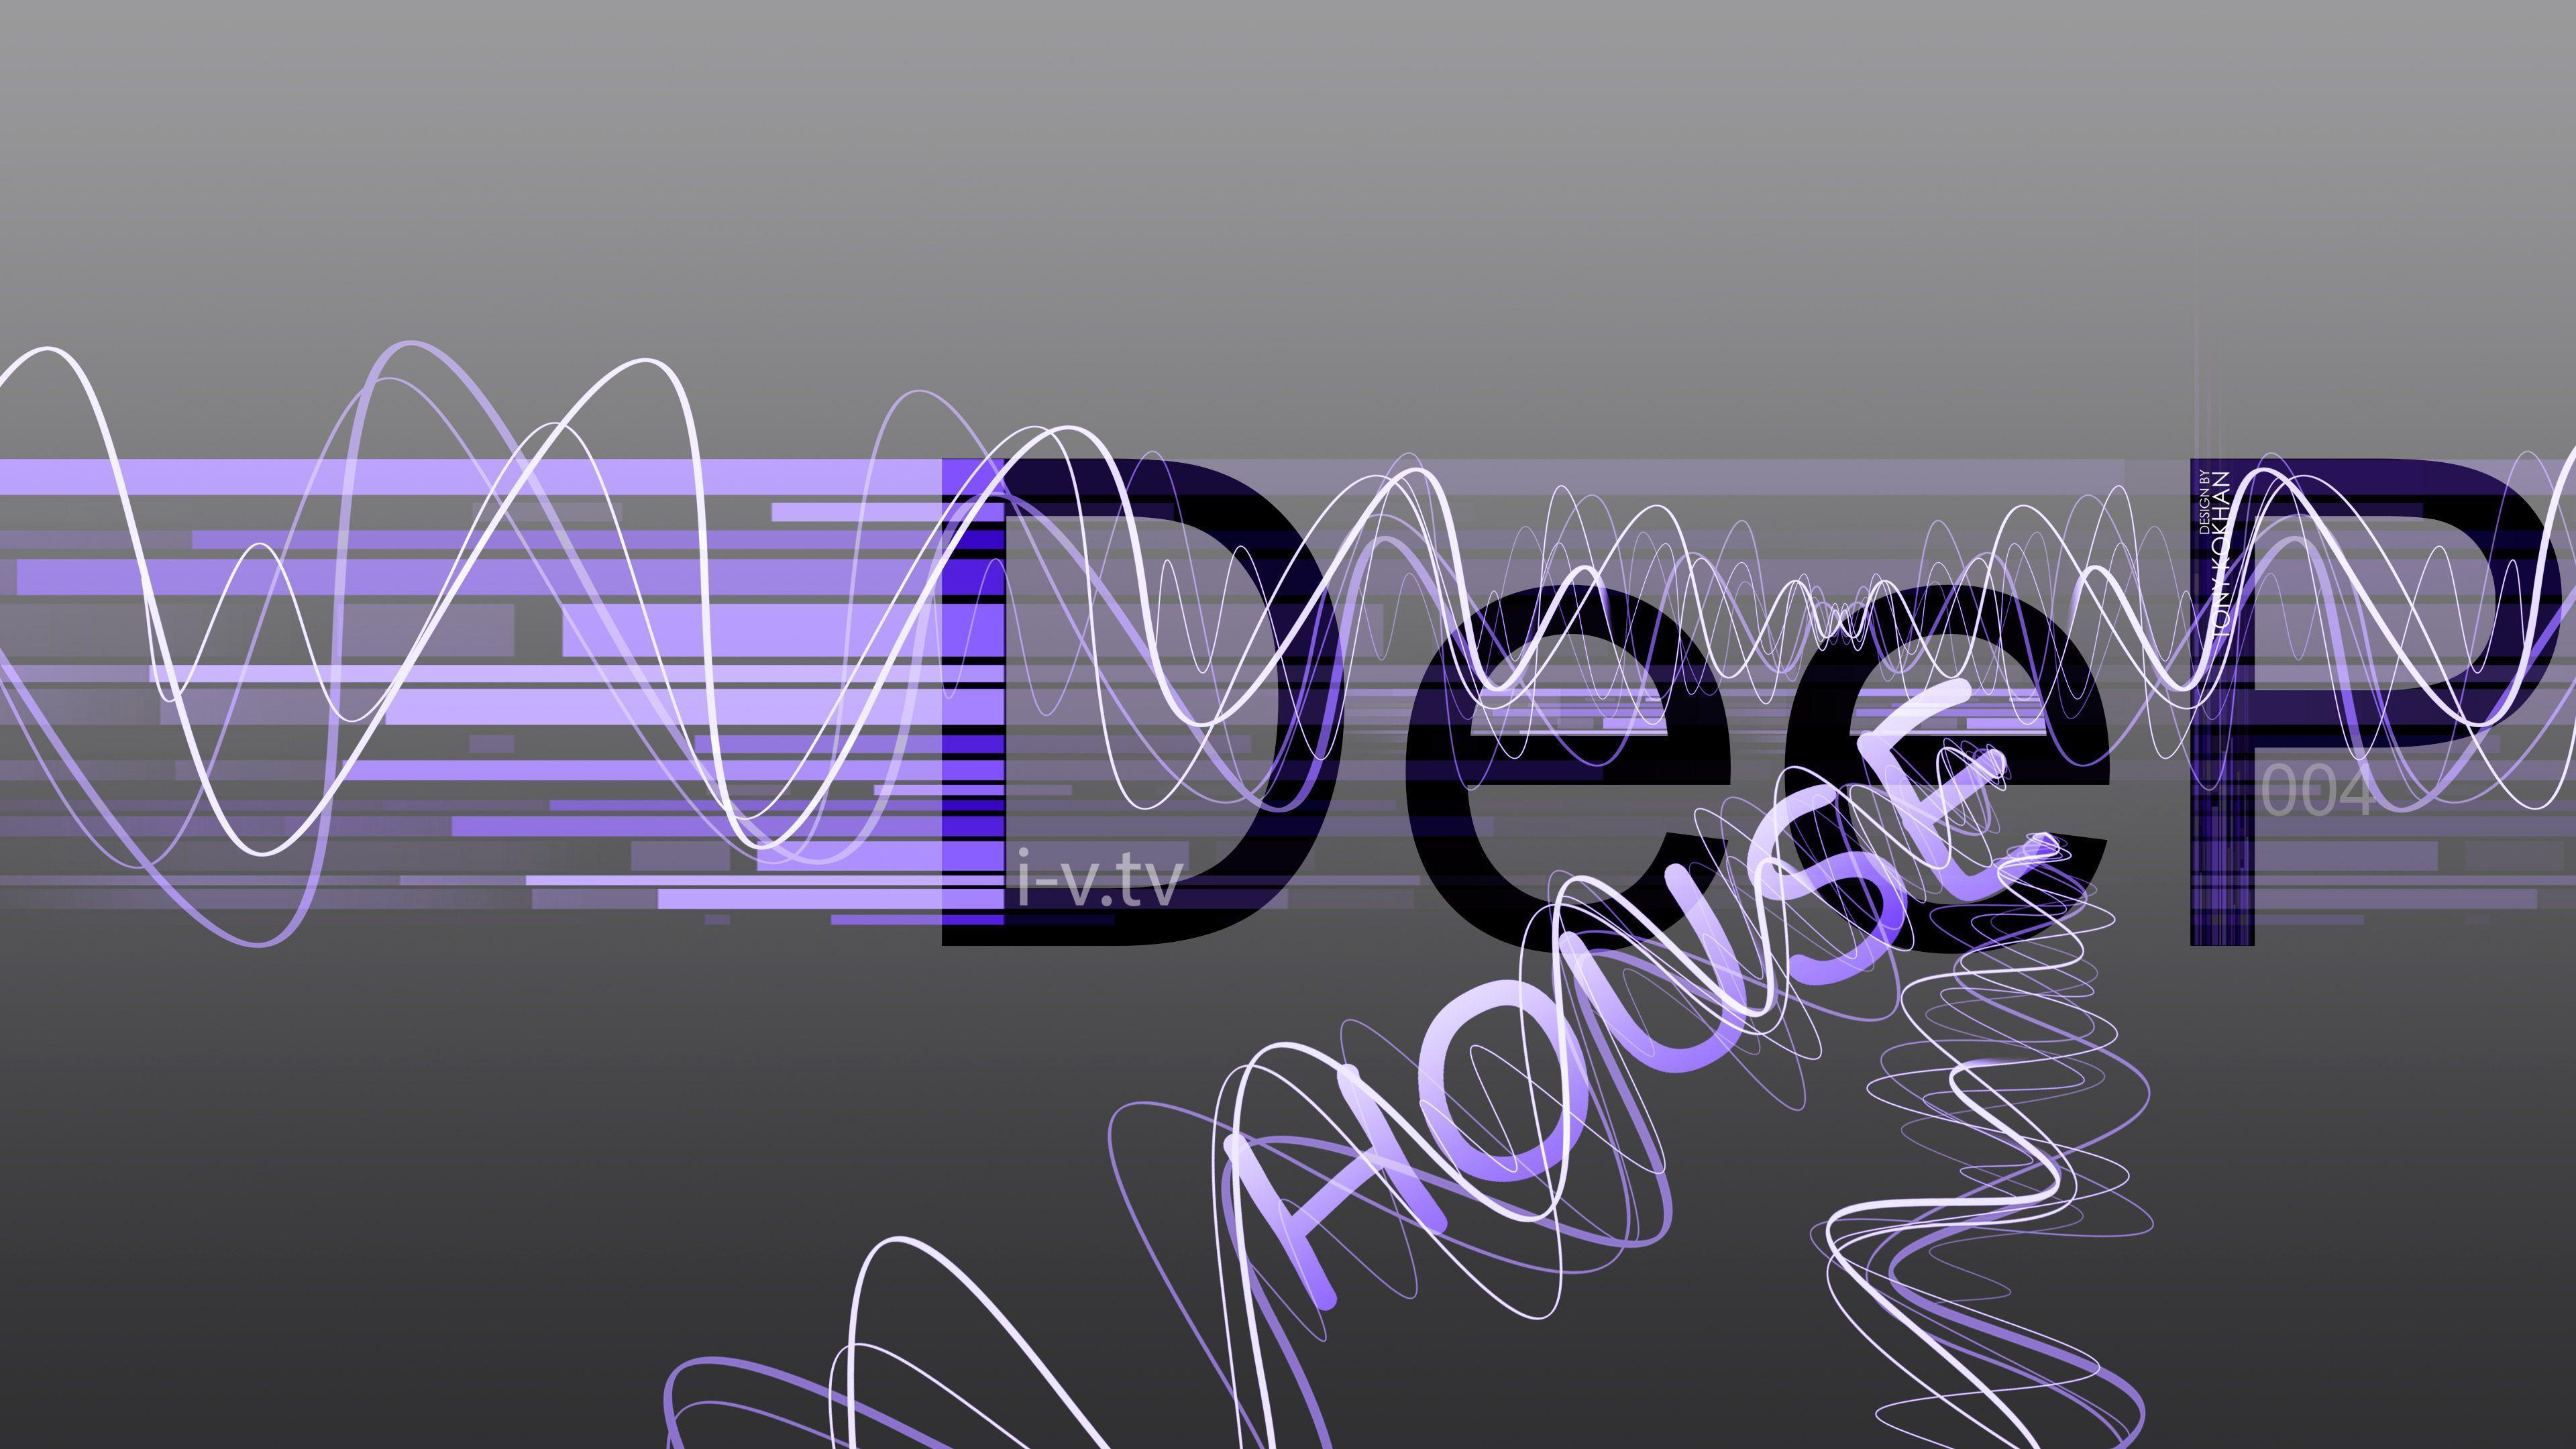 Deep House Music eQ Style 2015 Art Deep Eight Sound Wallpaper